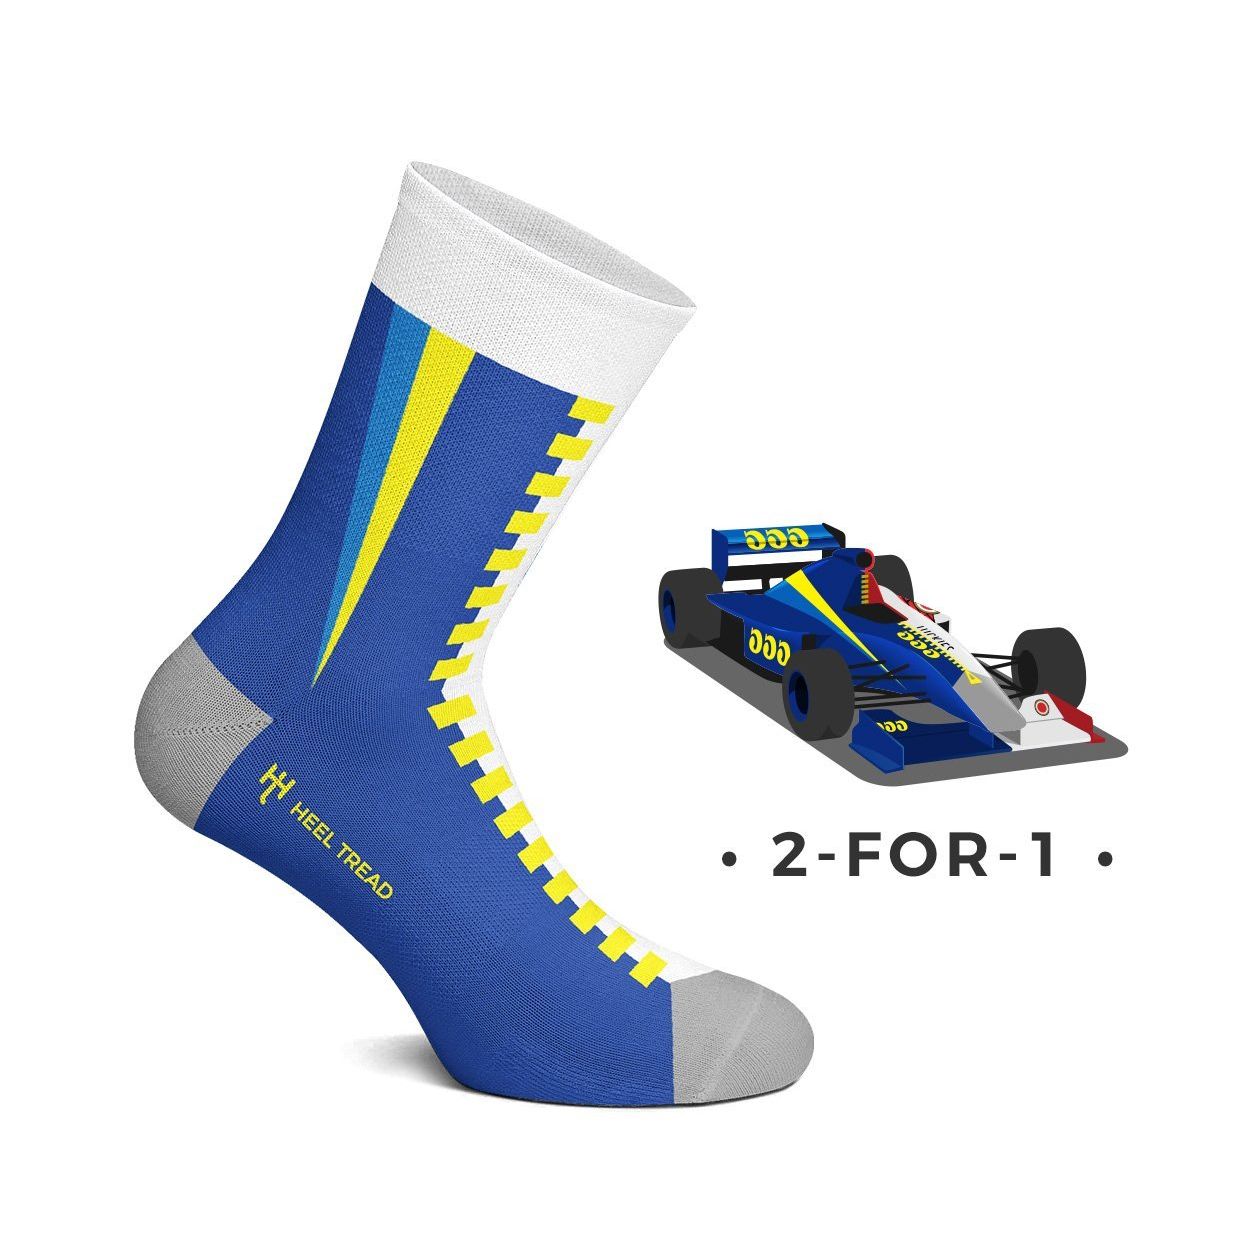 2 For 1 Socks - SMINKpower Performance Parts HT-2For1-Socks-L Heel Tread